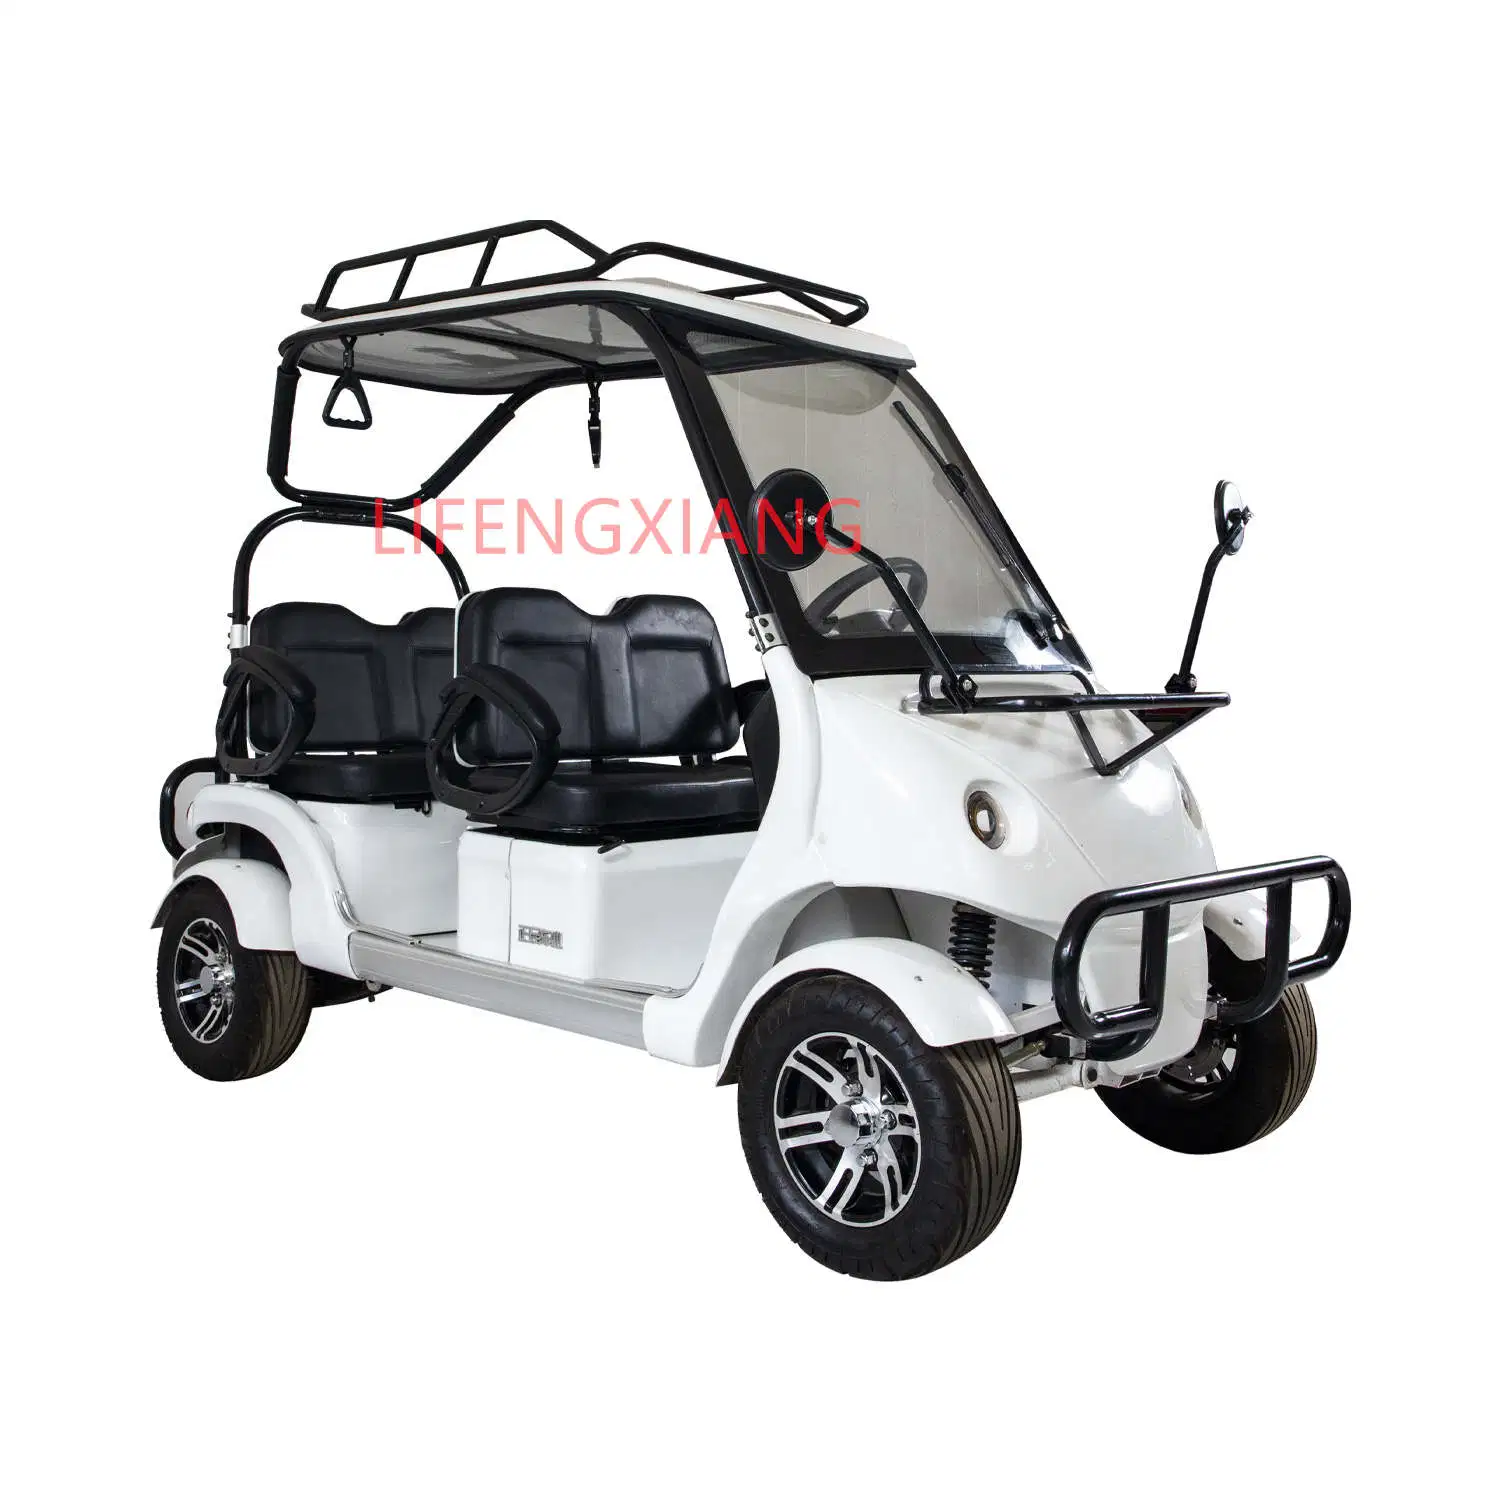 CE-Zulassung Neueintreffen Erwachsener batteriebetrieben 4 Sitze Sightseeing Club Car Electric Golf Trolley